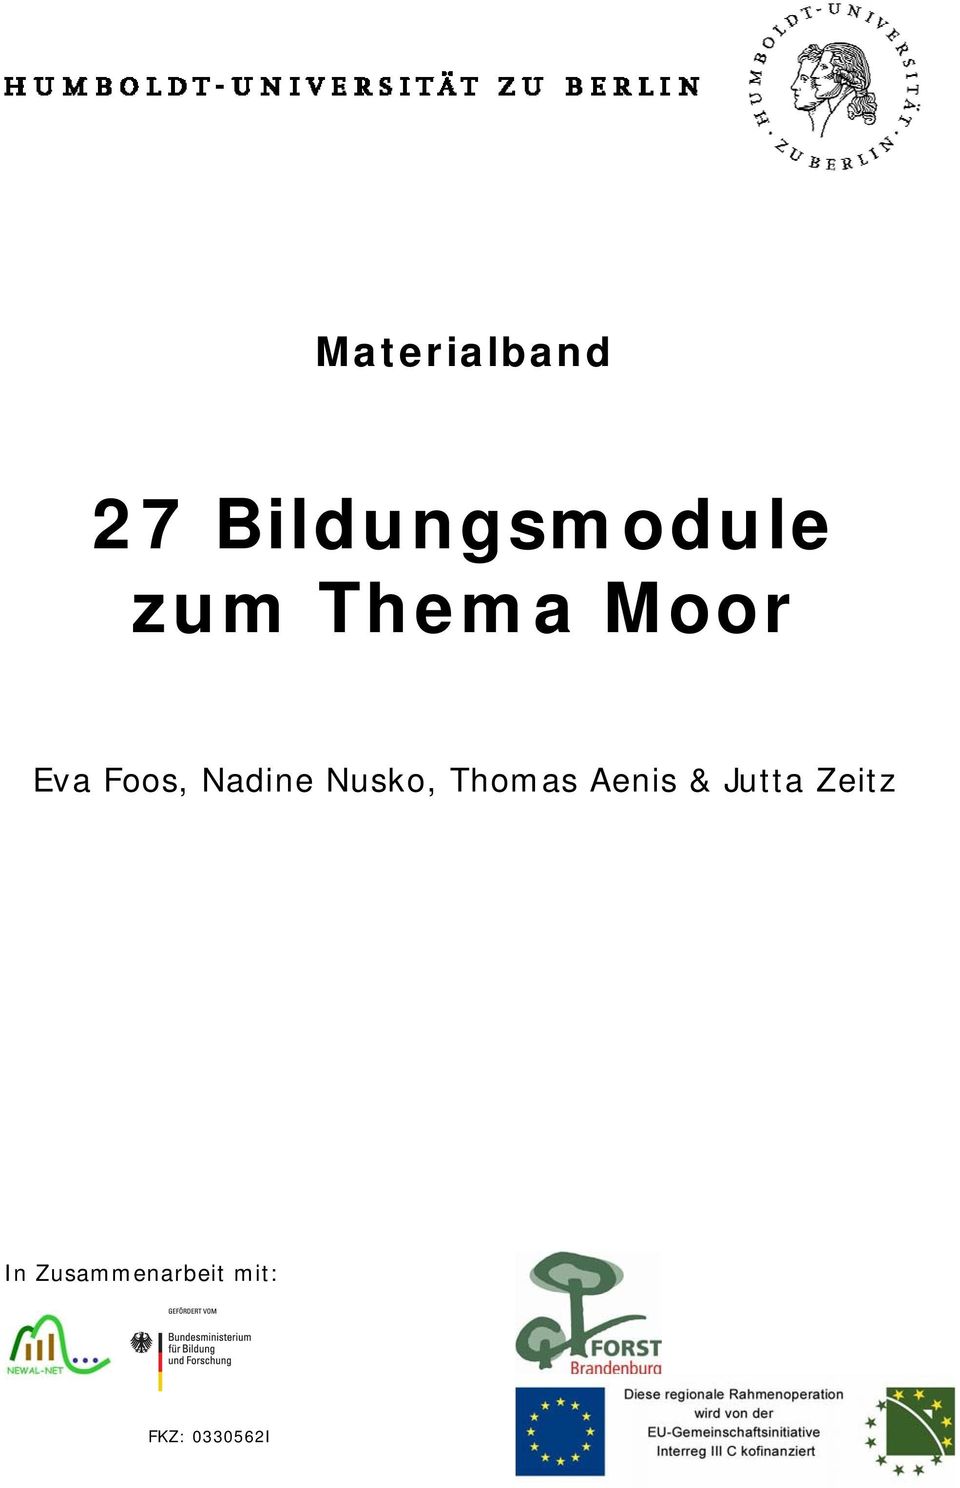 Nusko, Thomas Aenis & Jutta Zeitz